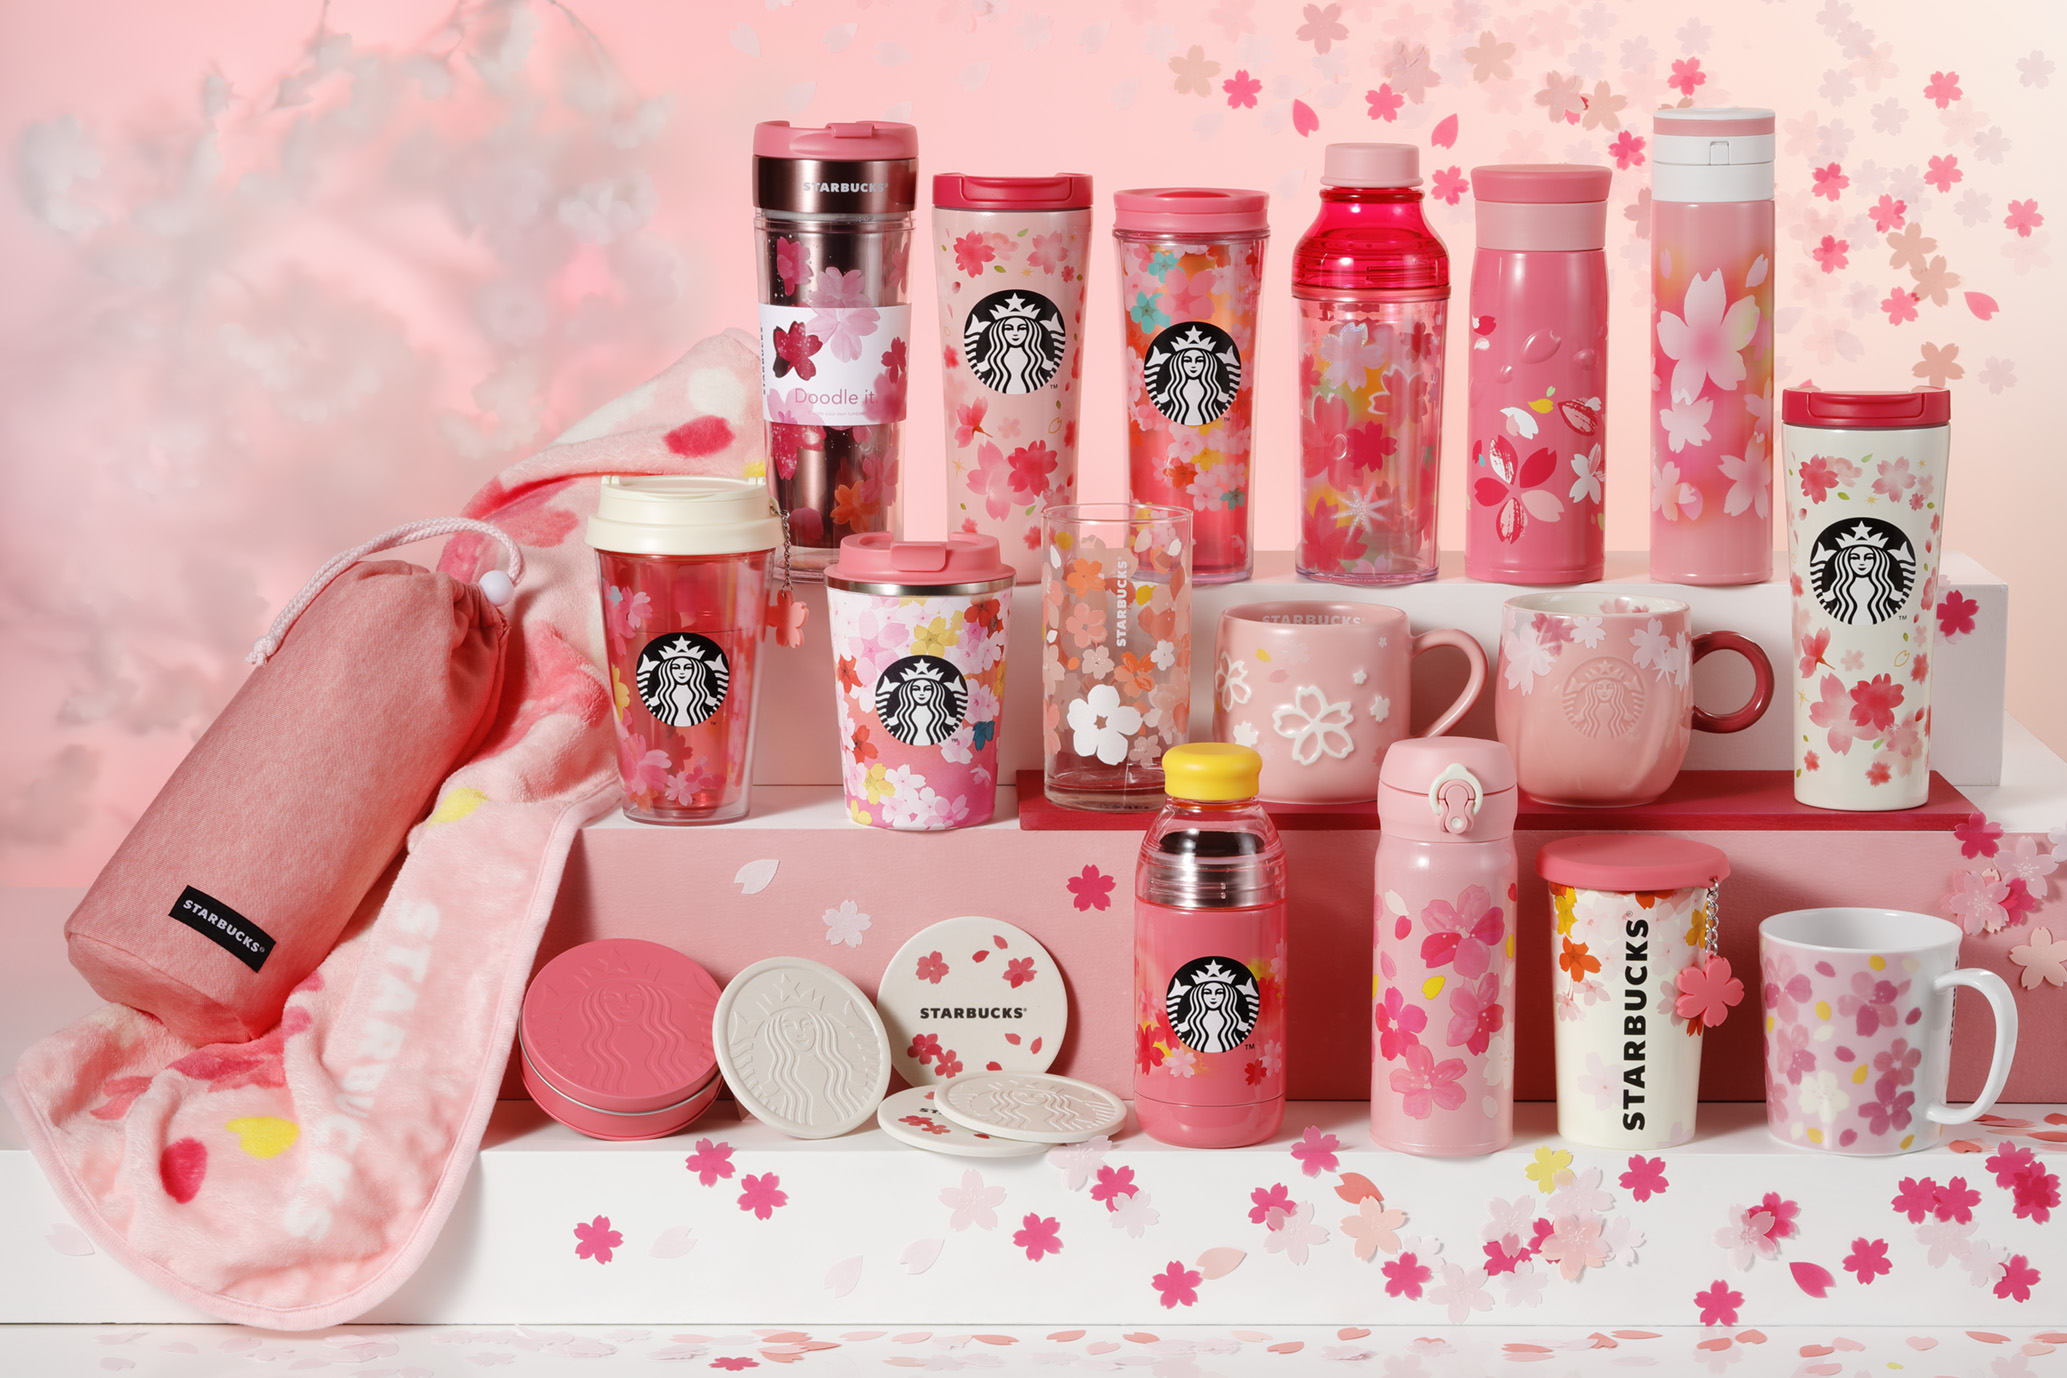 Starbucks débute la vente de "SAKURA", boisson exclusive au Japon représentant les cerisiers en